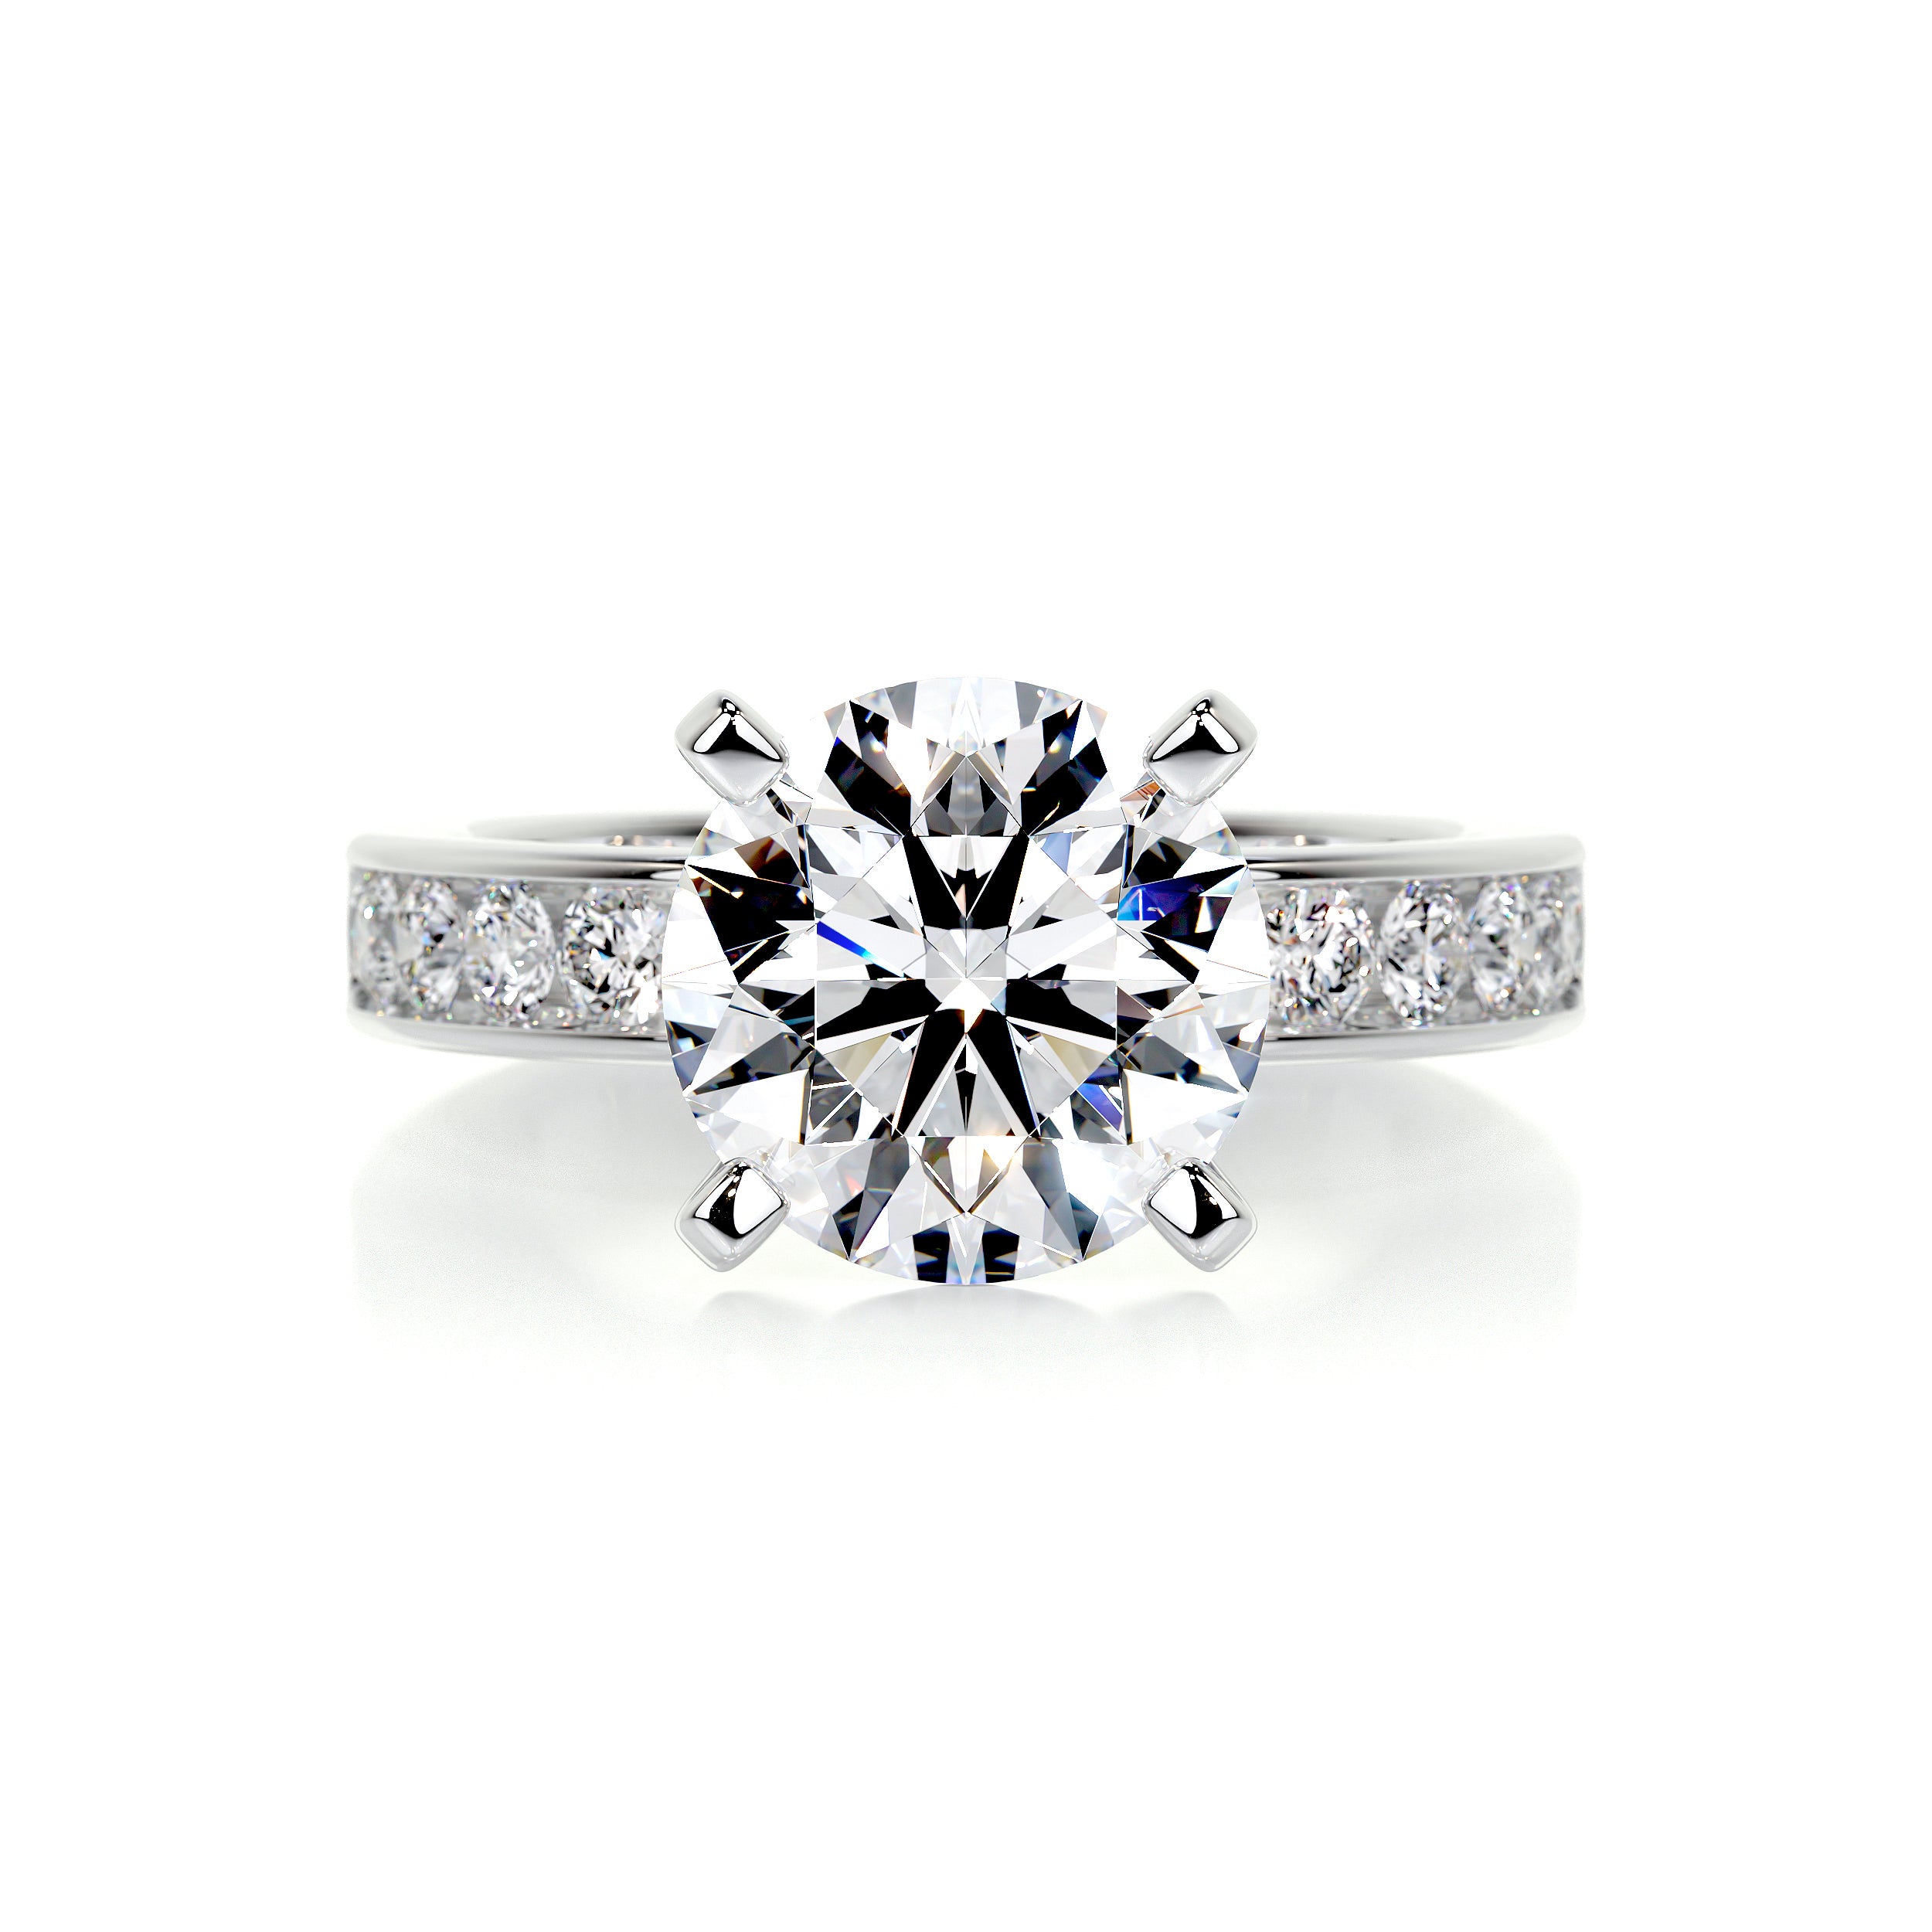 Giselle Diamond Engagement Ring   (3.50 Carat) -18K White Gold